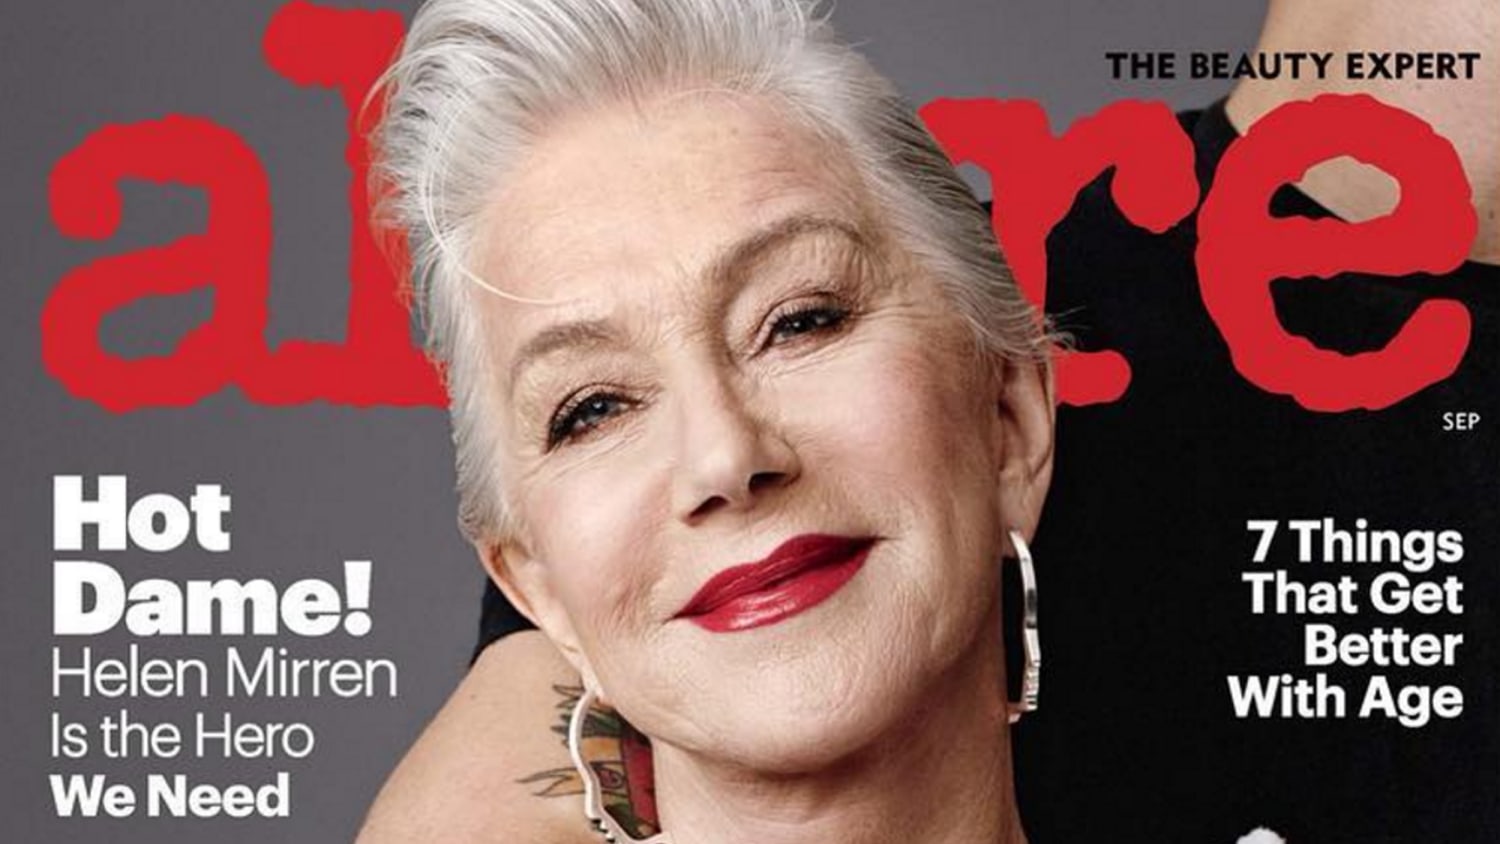 Imádjuk! A 72 éves Helen Mirren is szeptemberi címlaplány lett